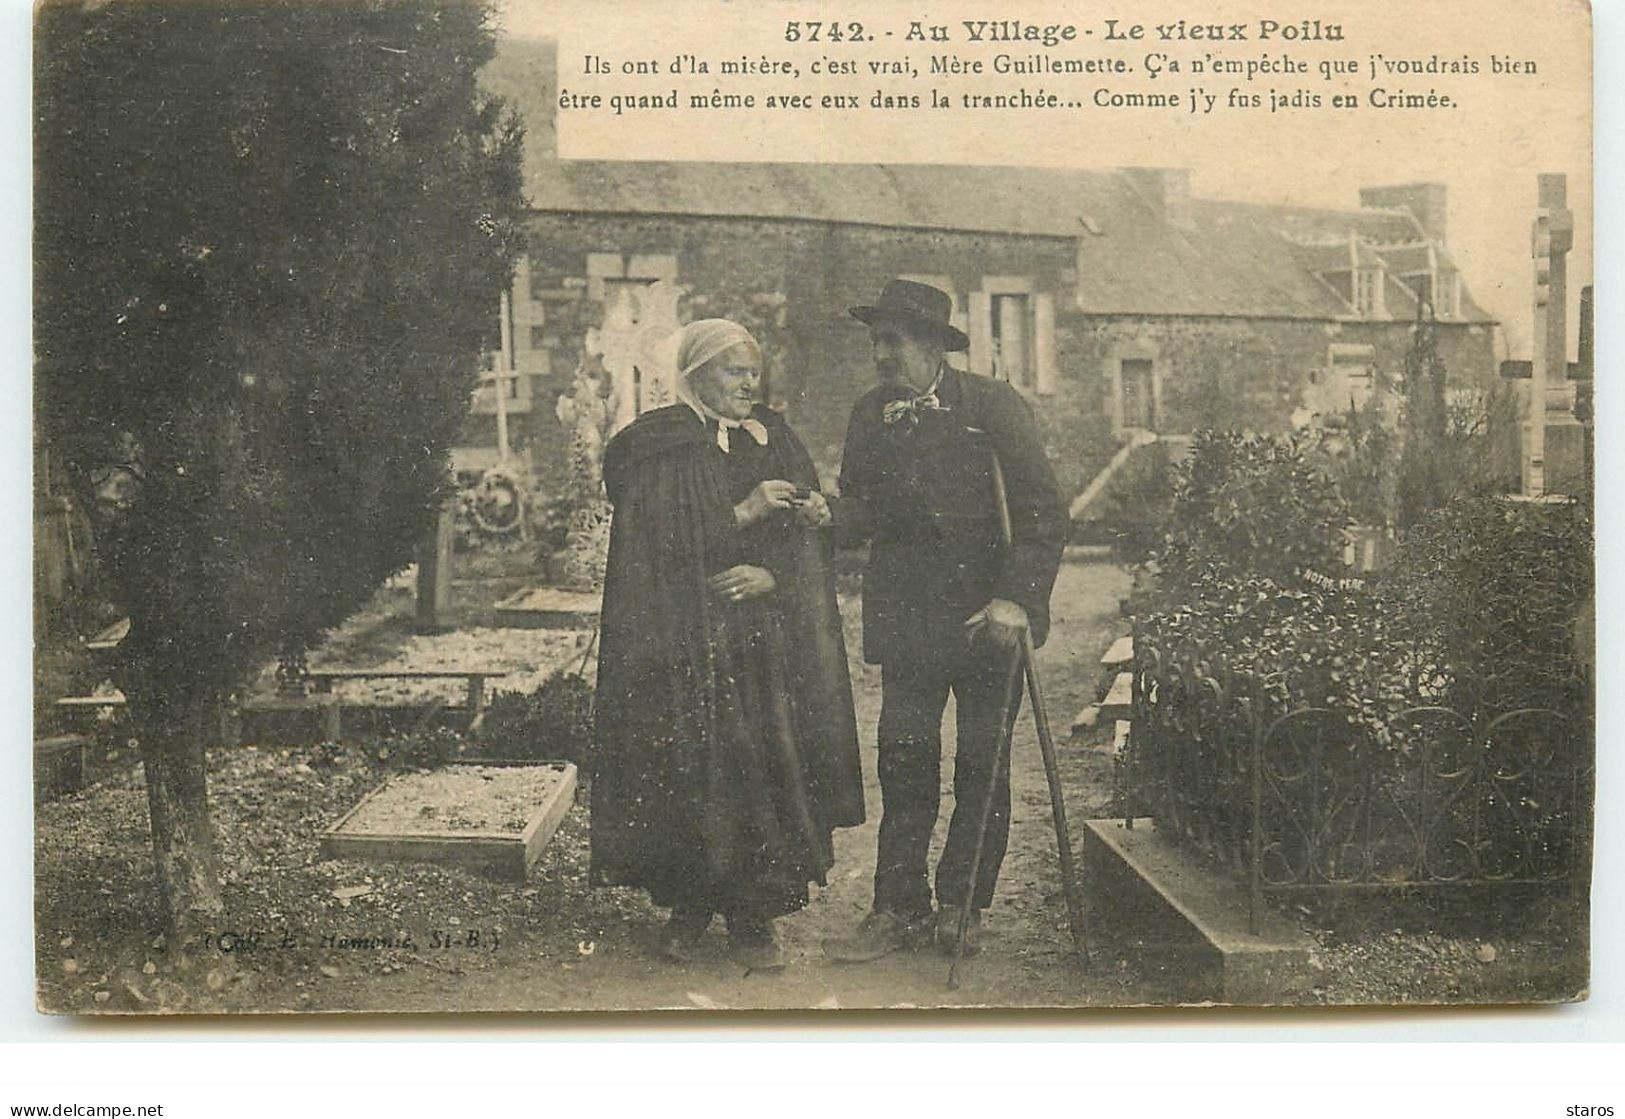 Guerre 14-18 - Au Village - Le Vieux Poilu - Ils Ont D'la Misère, C'est Vrai, Mère Guillemette... - War 1914-18